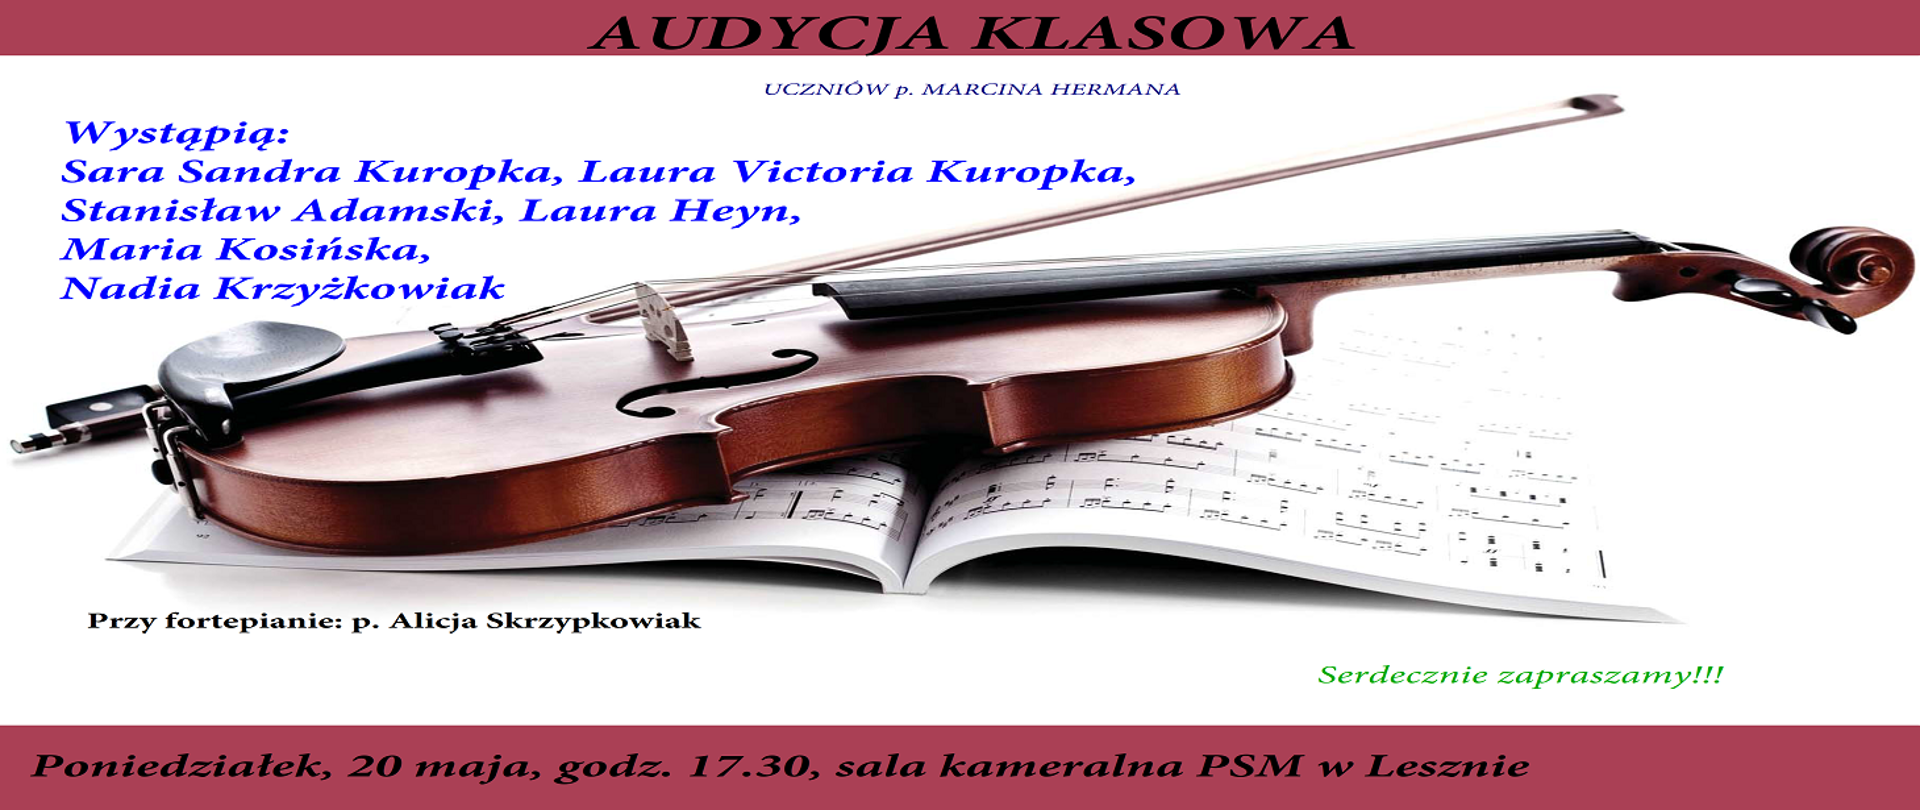 Plakat audycji klasowej uczniów p. Marcina Hermana z wypisanymi uczniami oraz rysunkiem skrzypiec i nut. 